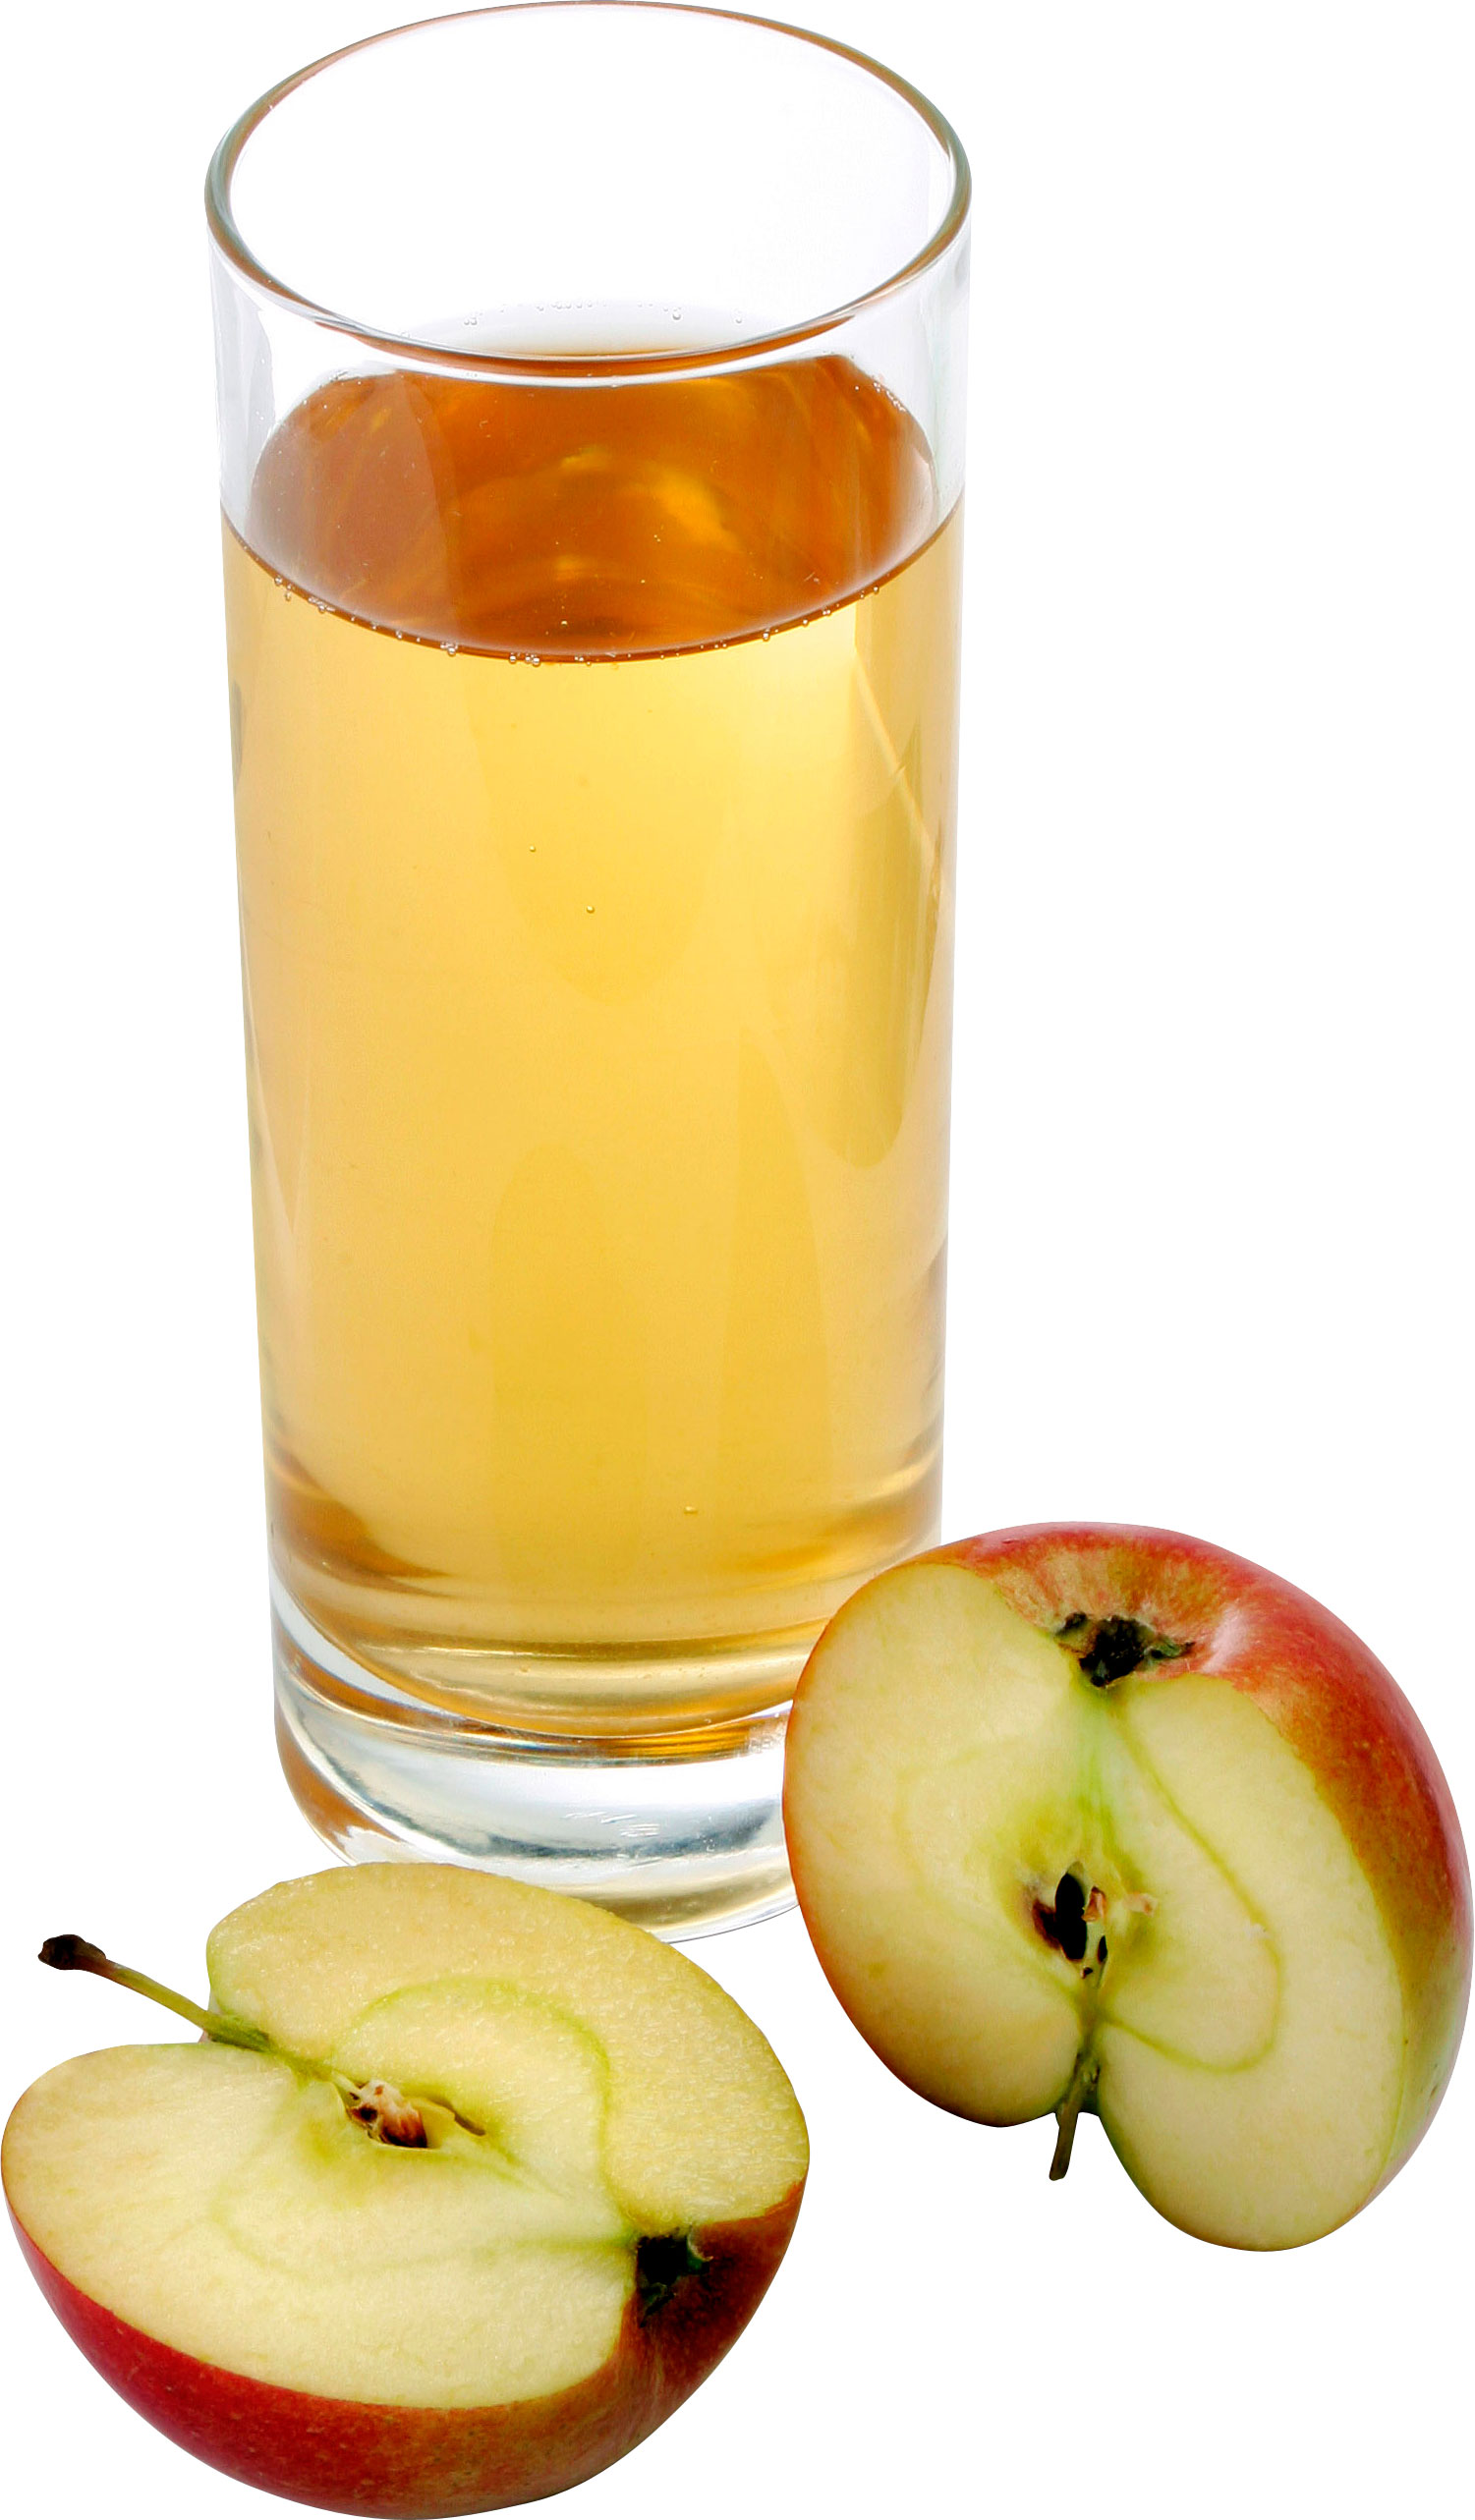 Две половинки яблока и стакан яблочного сока